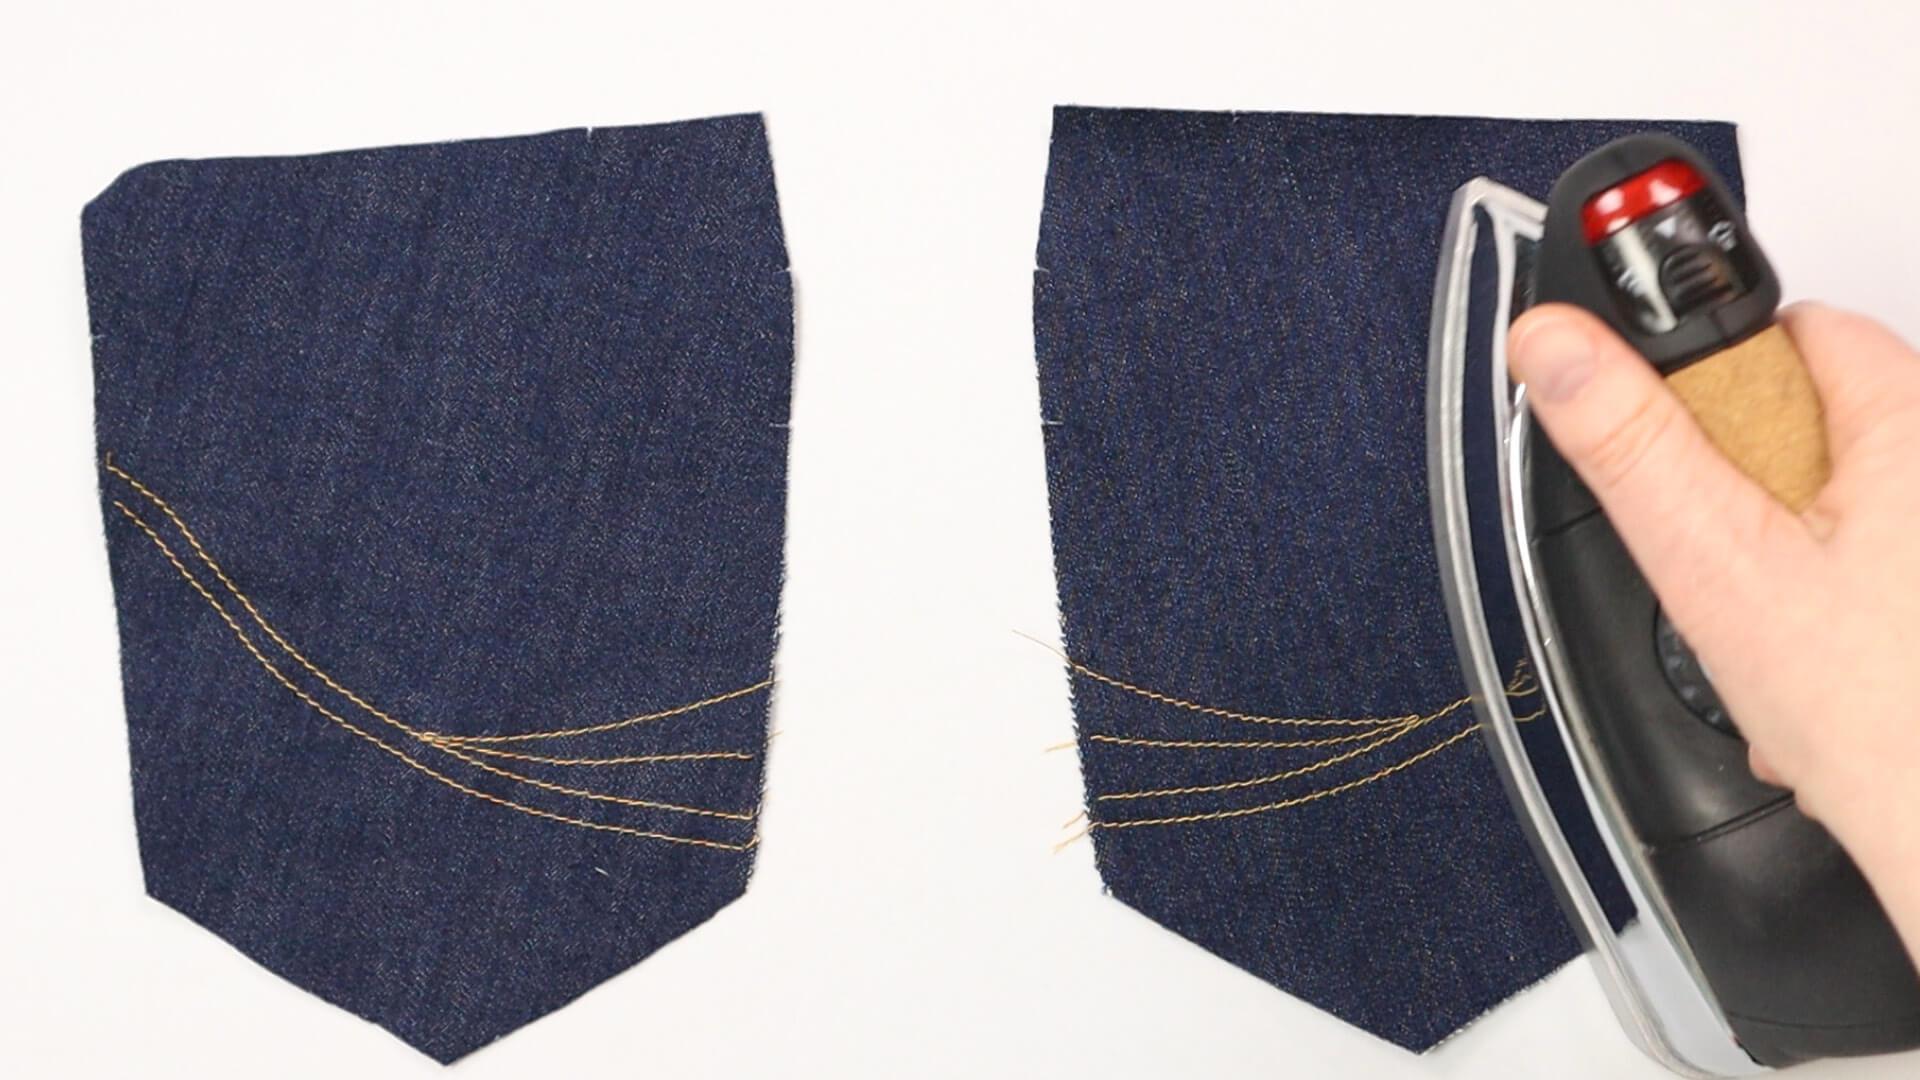 smartPATTERN Nähanleitung für aufgesetzte hintere Tasche einer Jeanshose- Bügeln der Ziersteppungen